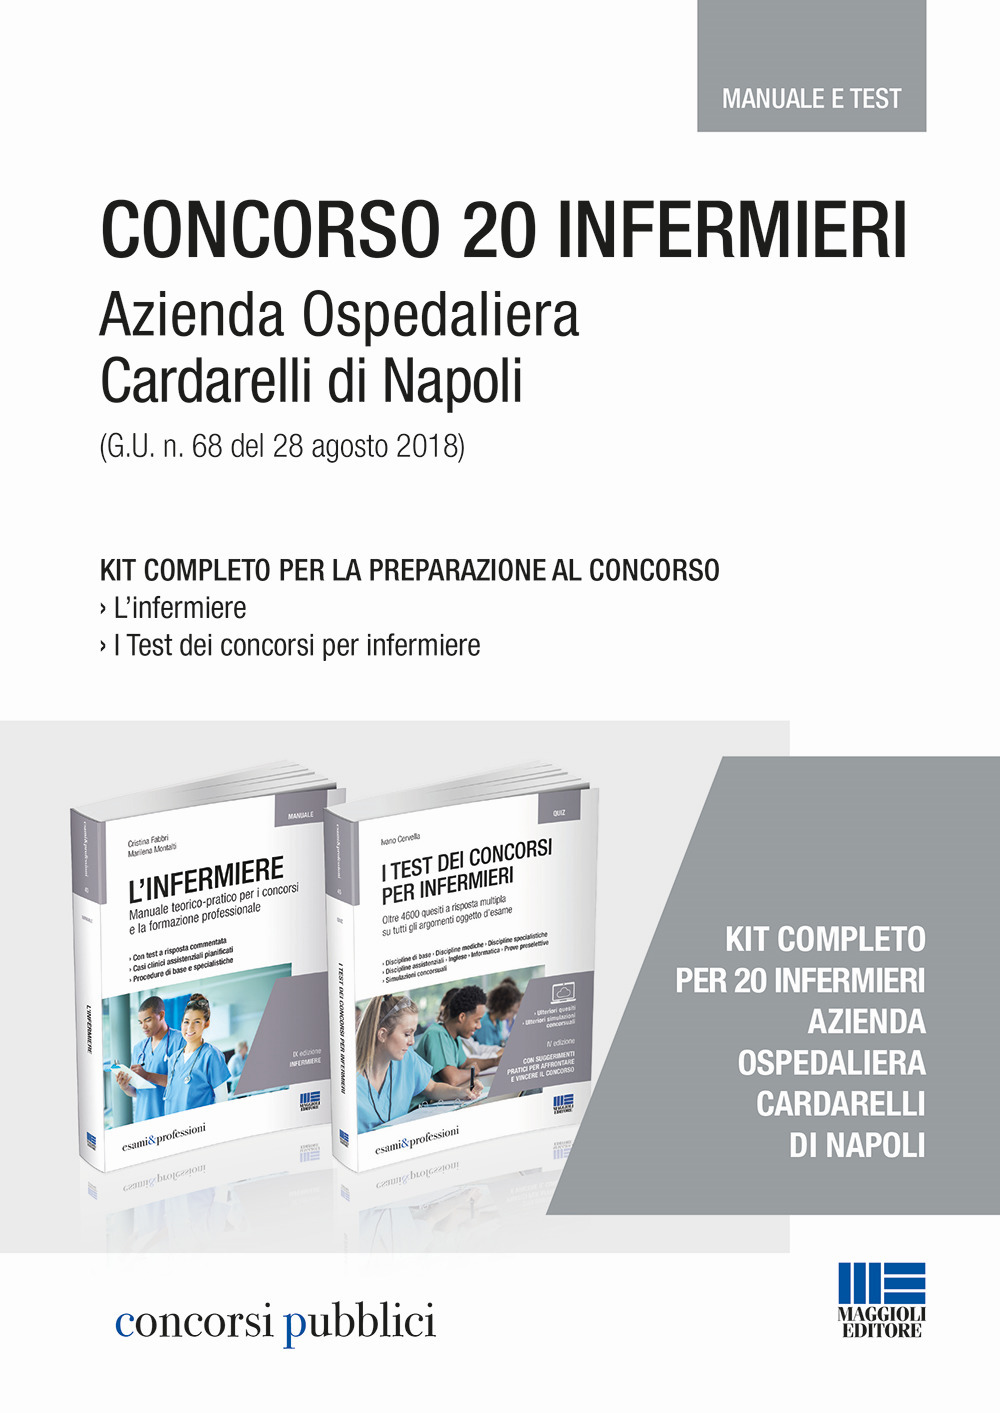 Kit Concorso 20 infermieri Azienda Ospedaliera Cardarelli di Napoli (G.U. n. 68 del 28 agosto 2018)